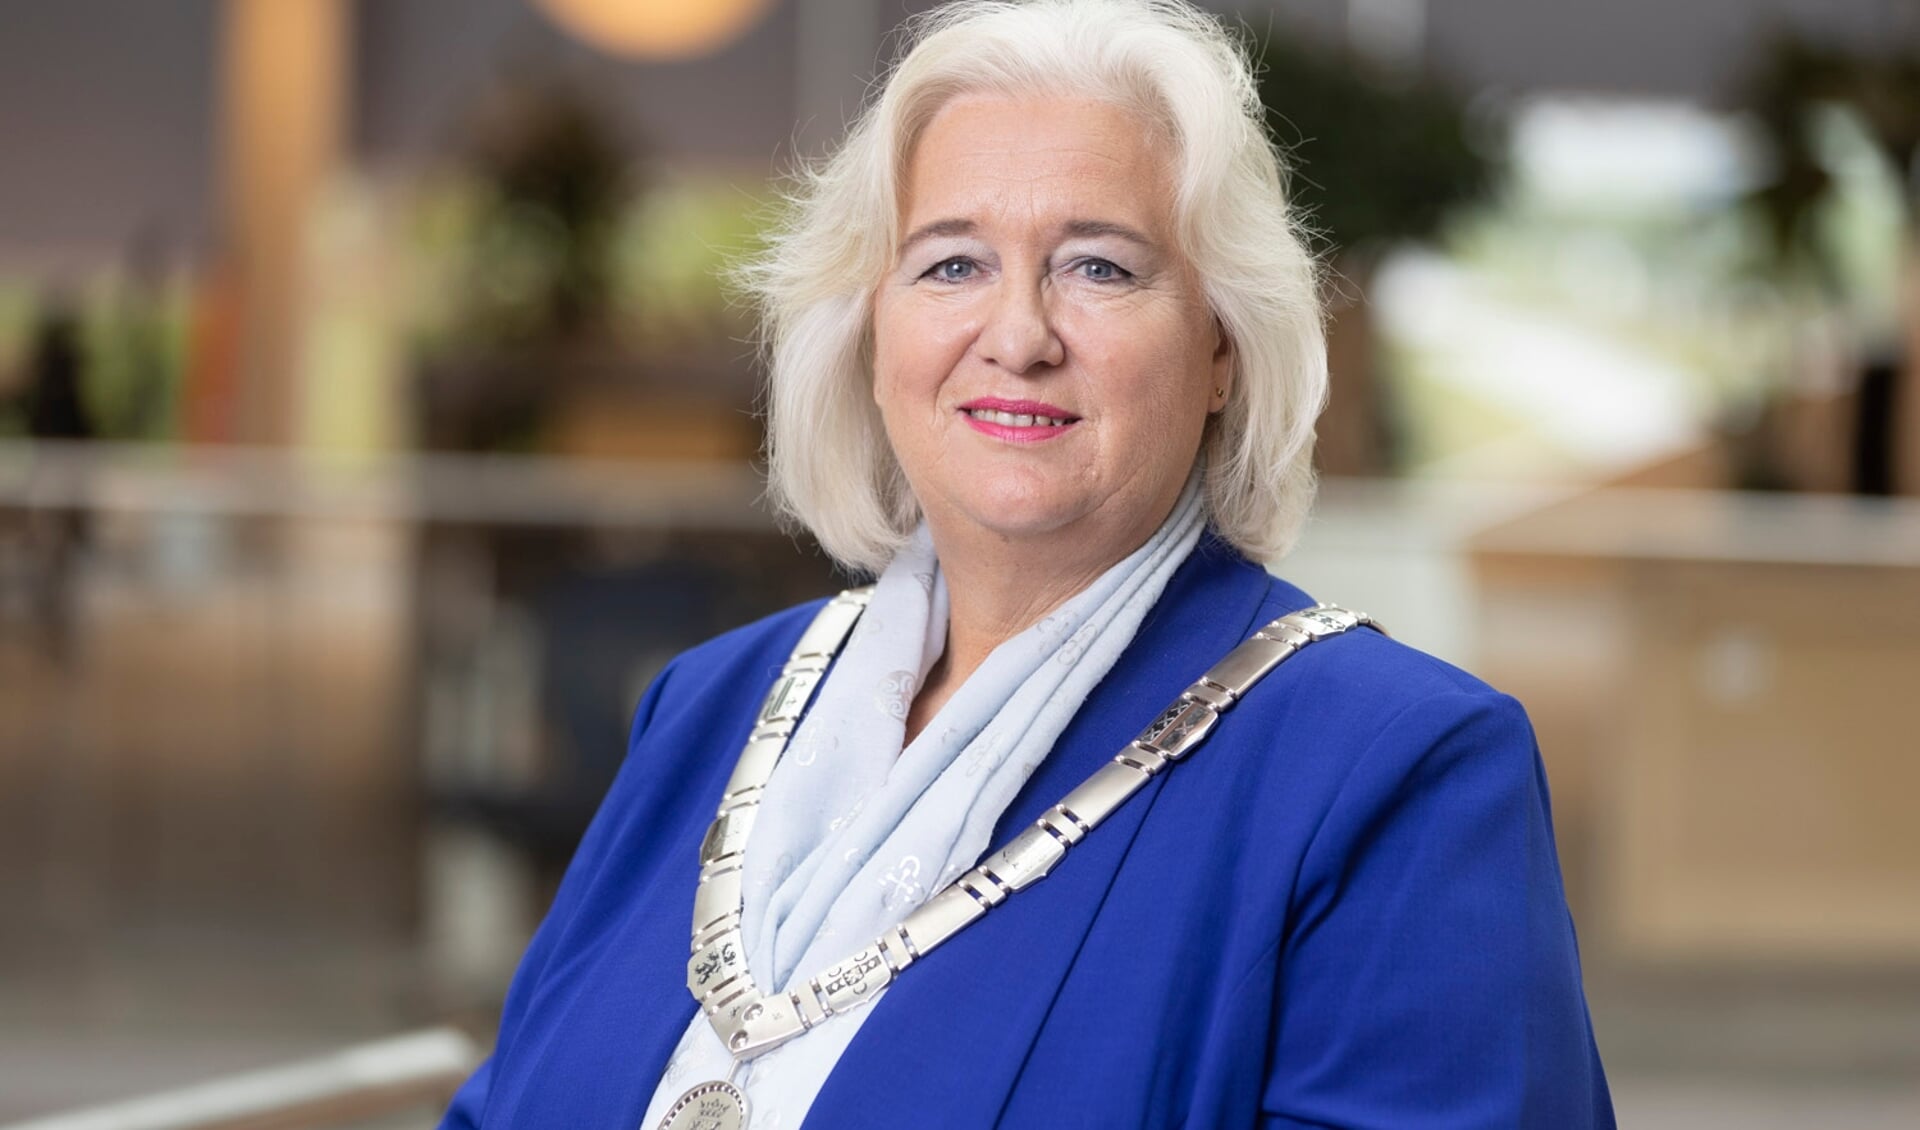 Burgemeester Marianne Schuurmans: "Haarlemmermeer is een verzameling hechte gemeenschappen dankzij de mensen uit de kernen, wijken en buurten, de 8 ondernemers, de vele organisaties, verenigingen, clubs van alle inwoners van onze 31 kernen. 